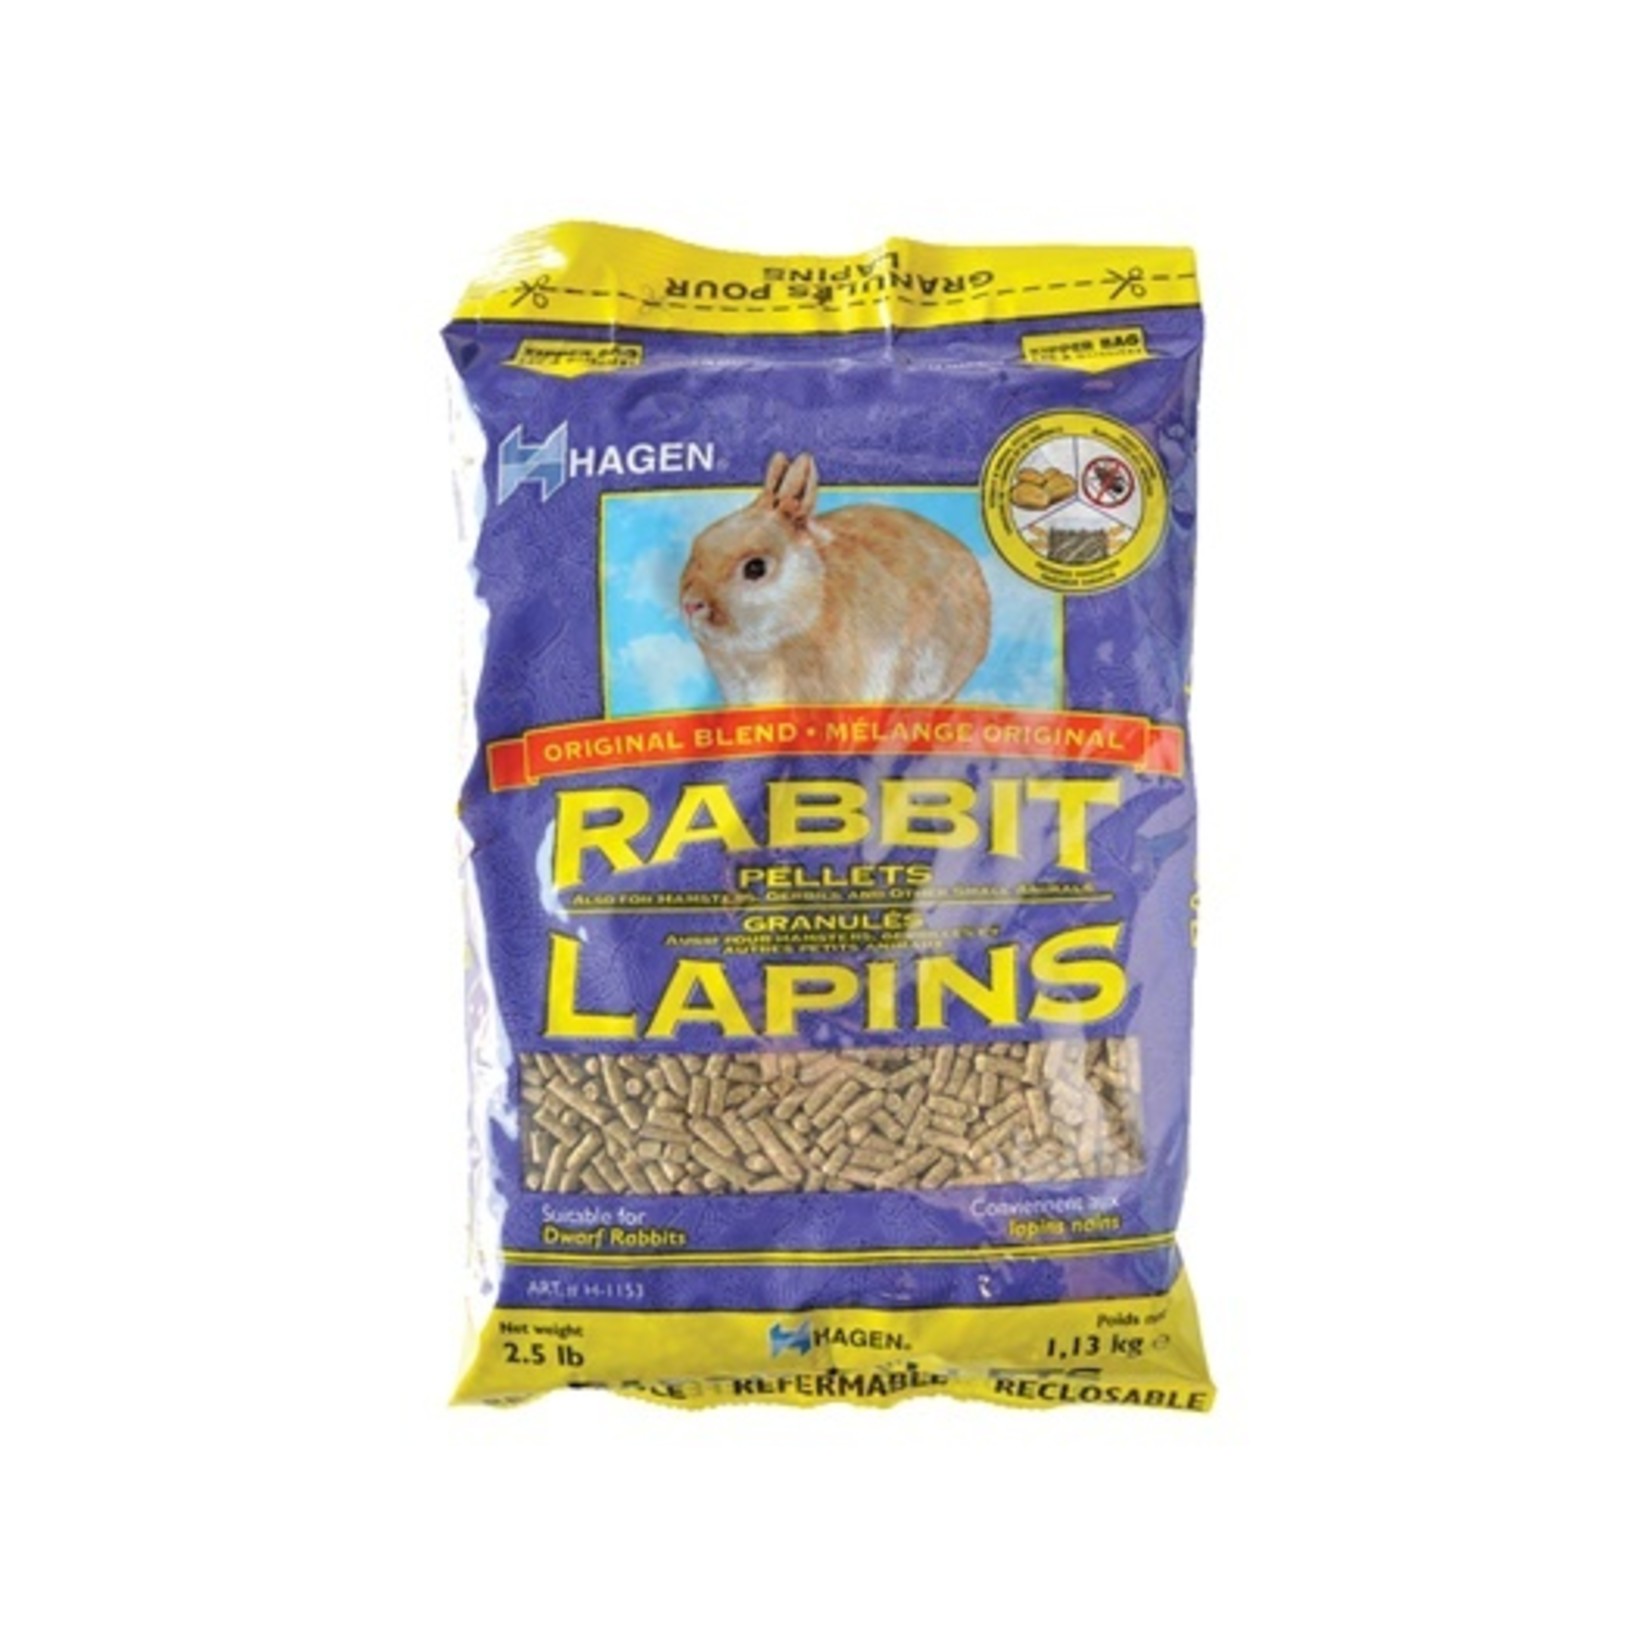 (W) Hagen Rabbit Pellets - 1.13 kg (2.5 lbs)